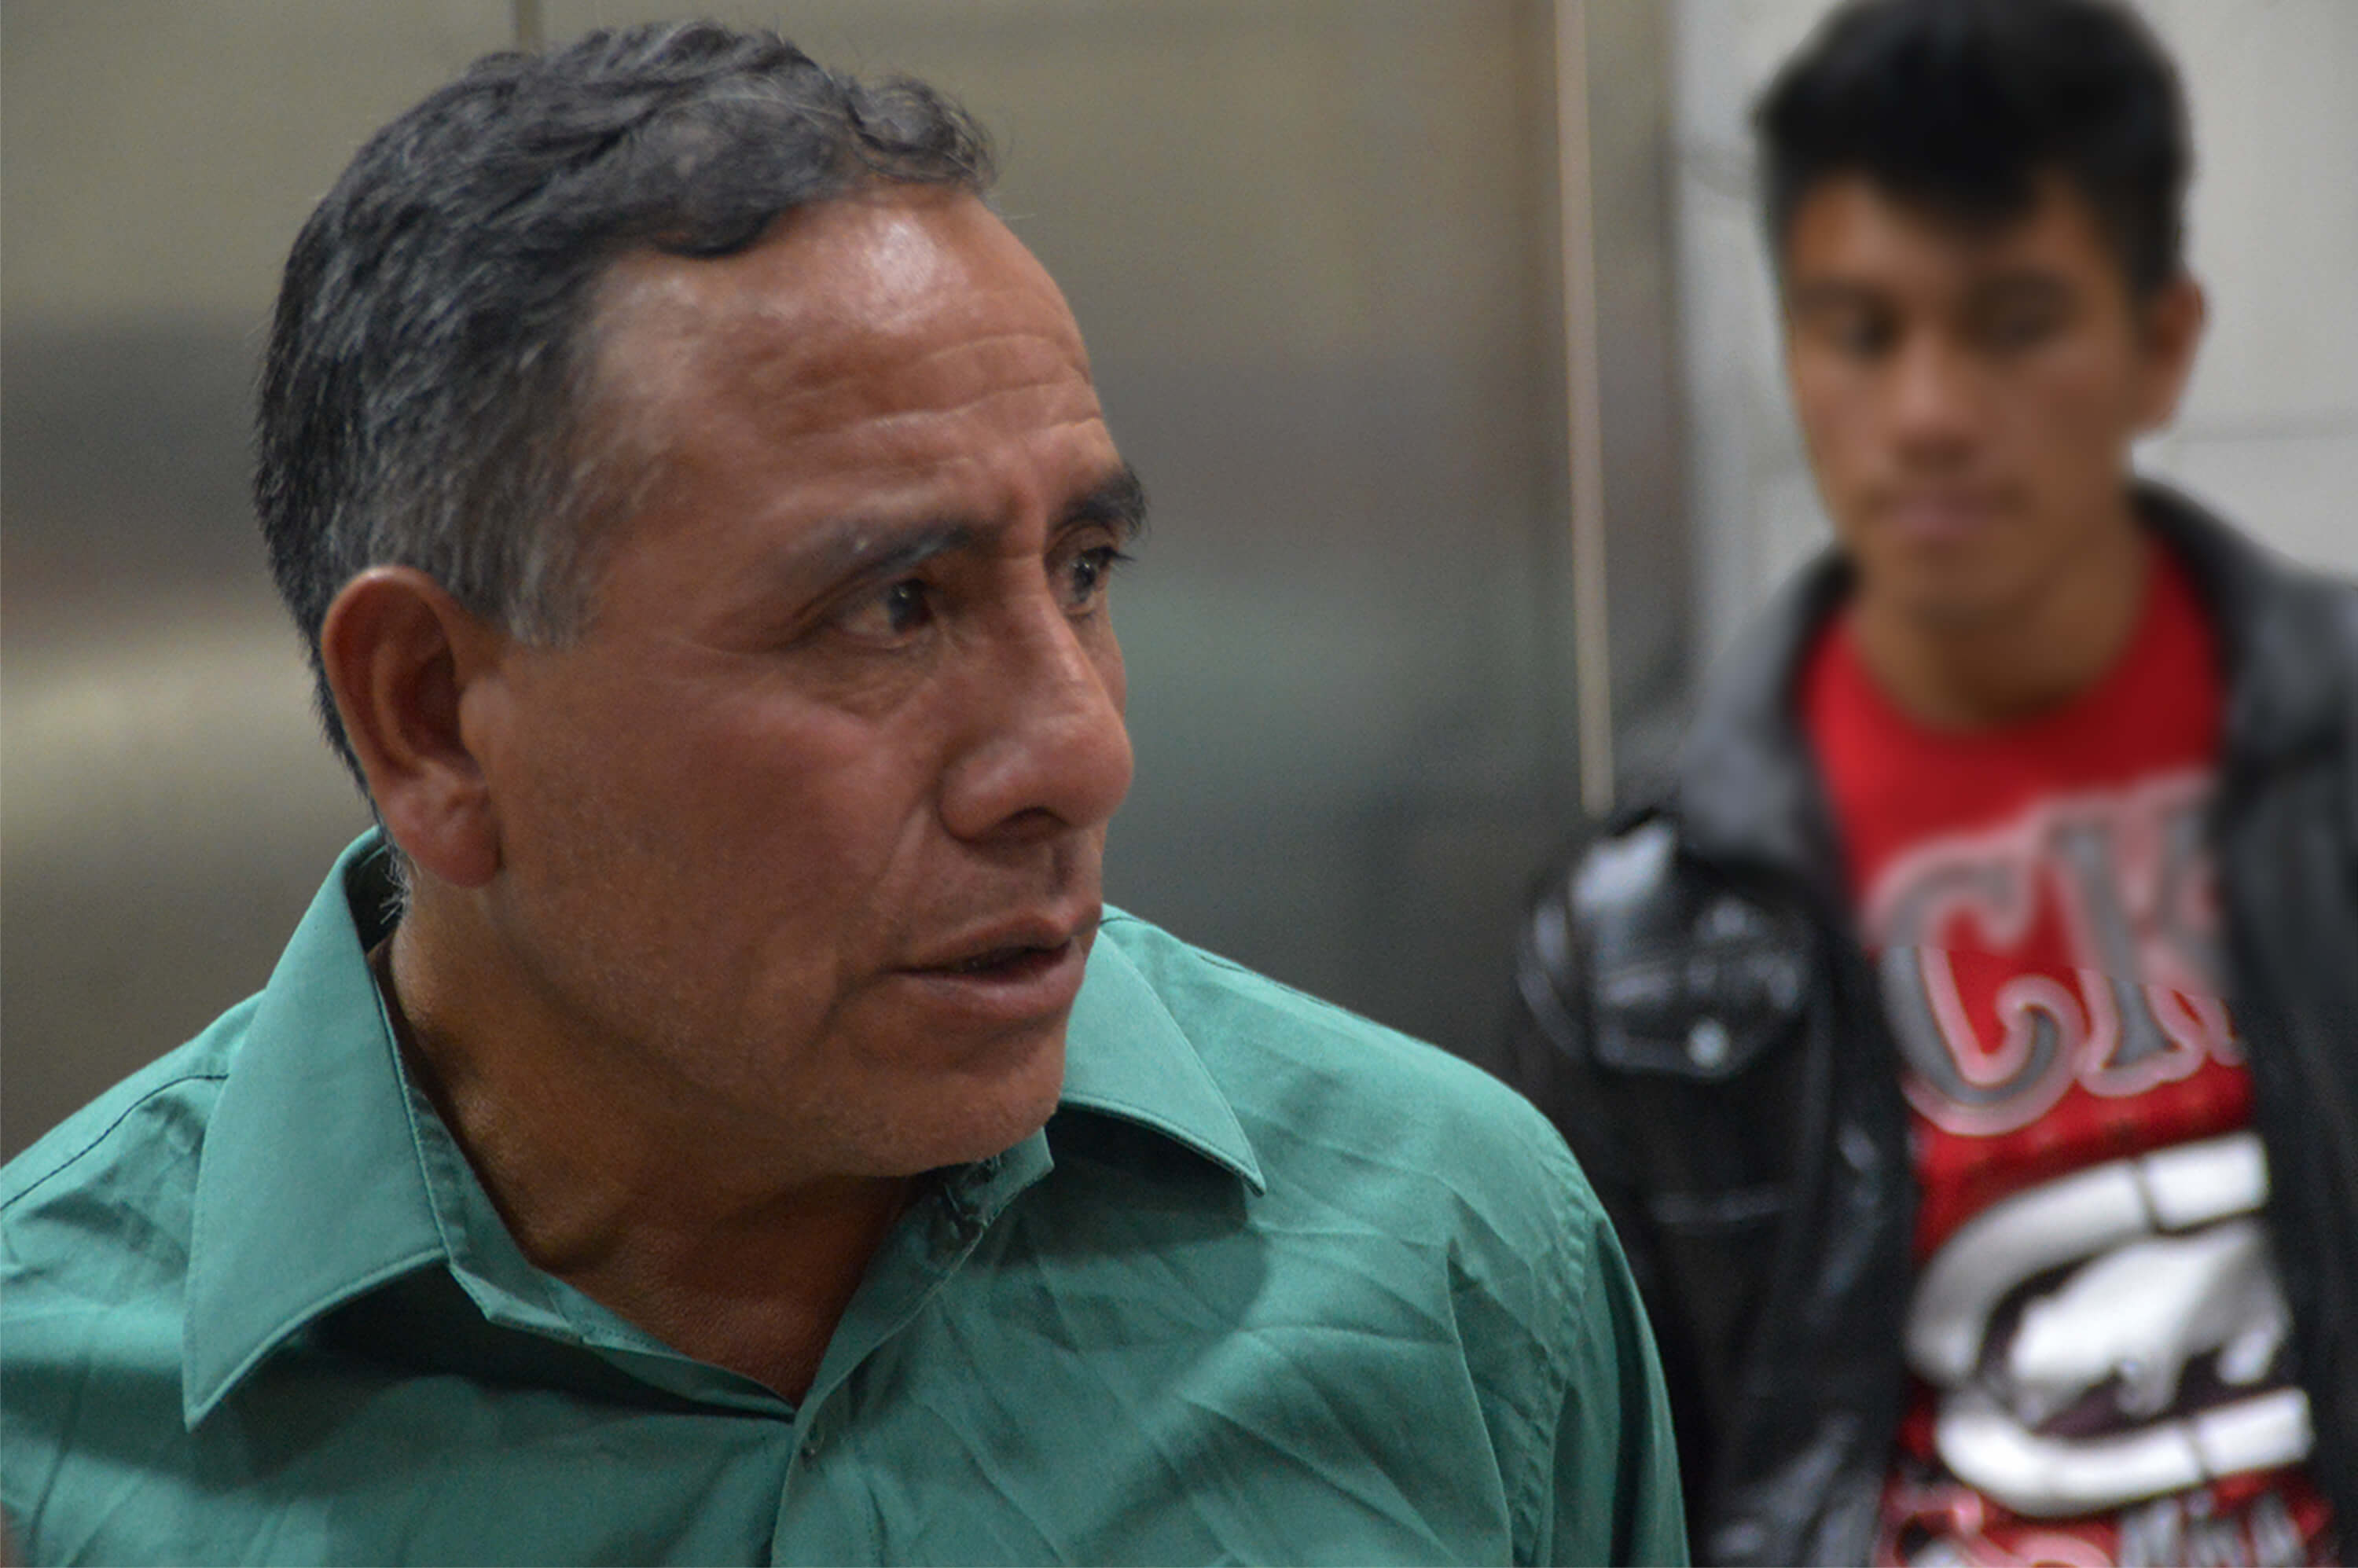 Domingo Baltazar at the Preventive Detention Center. Photo by Nelton Rivera, Prensa Comunitaria